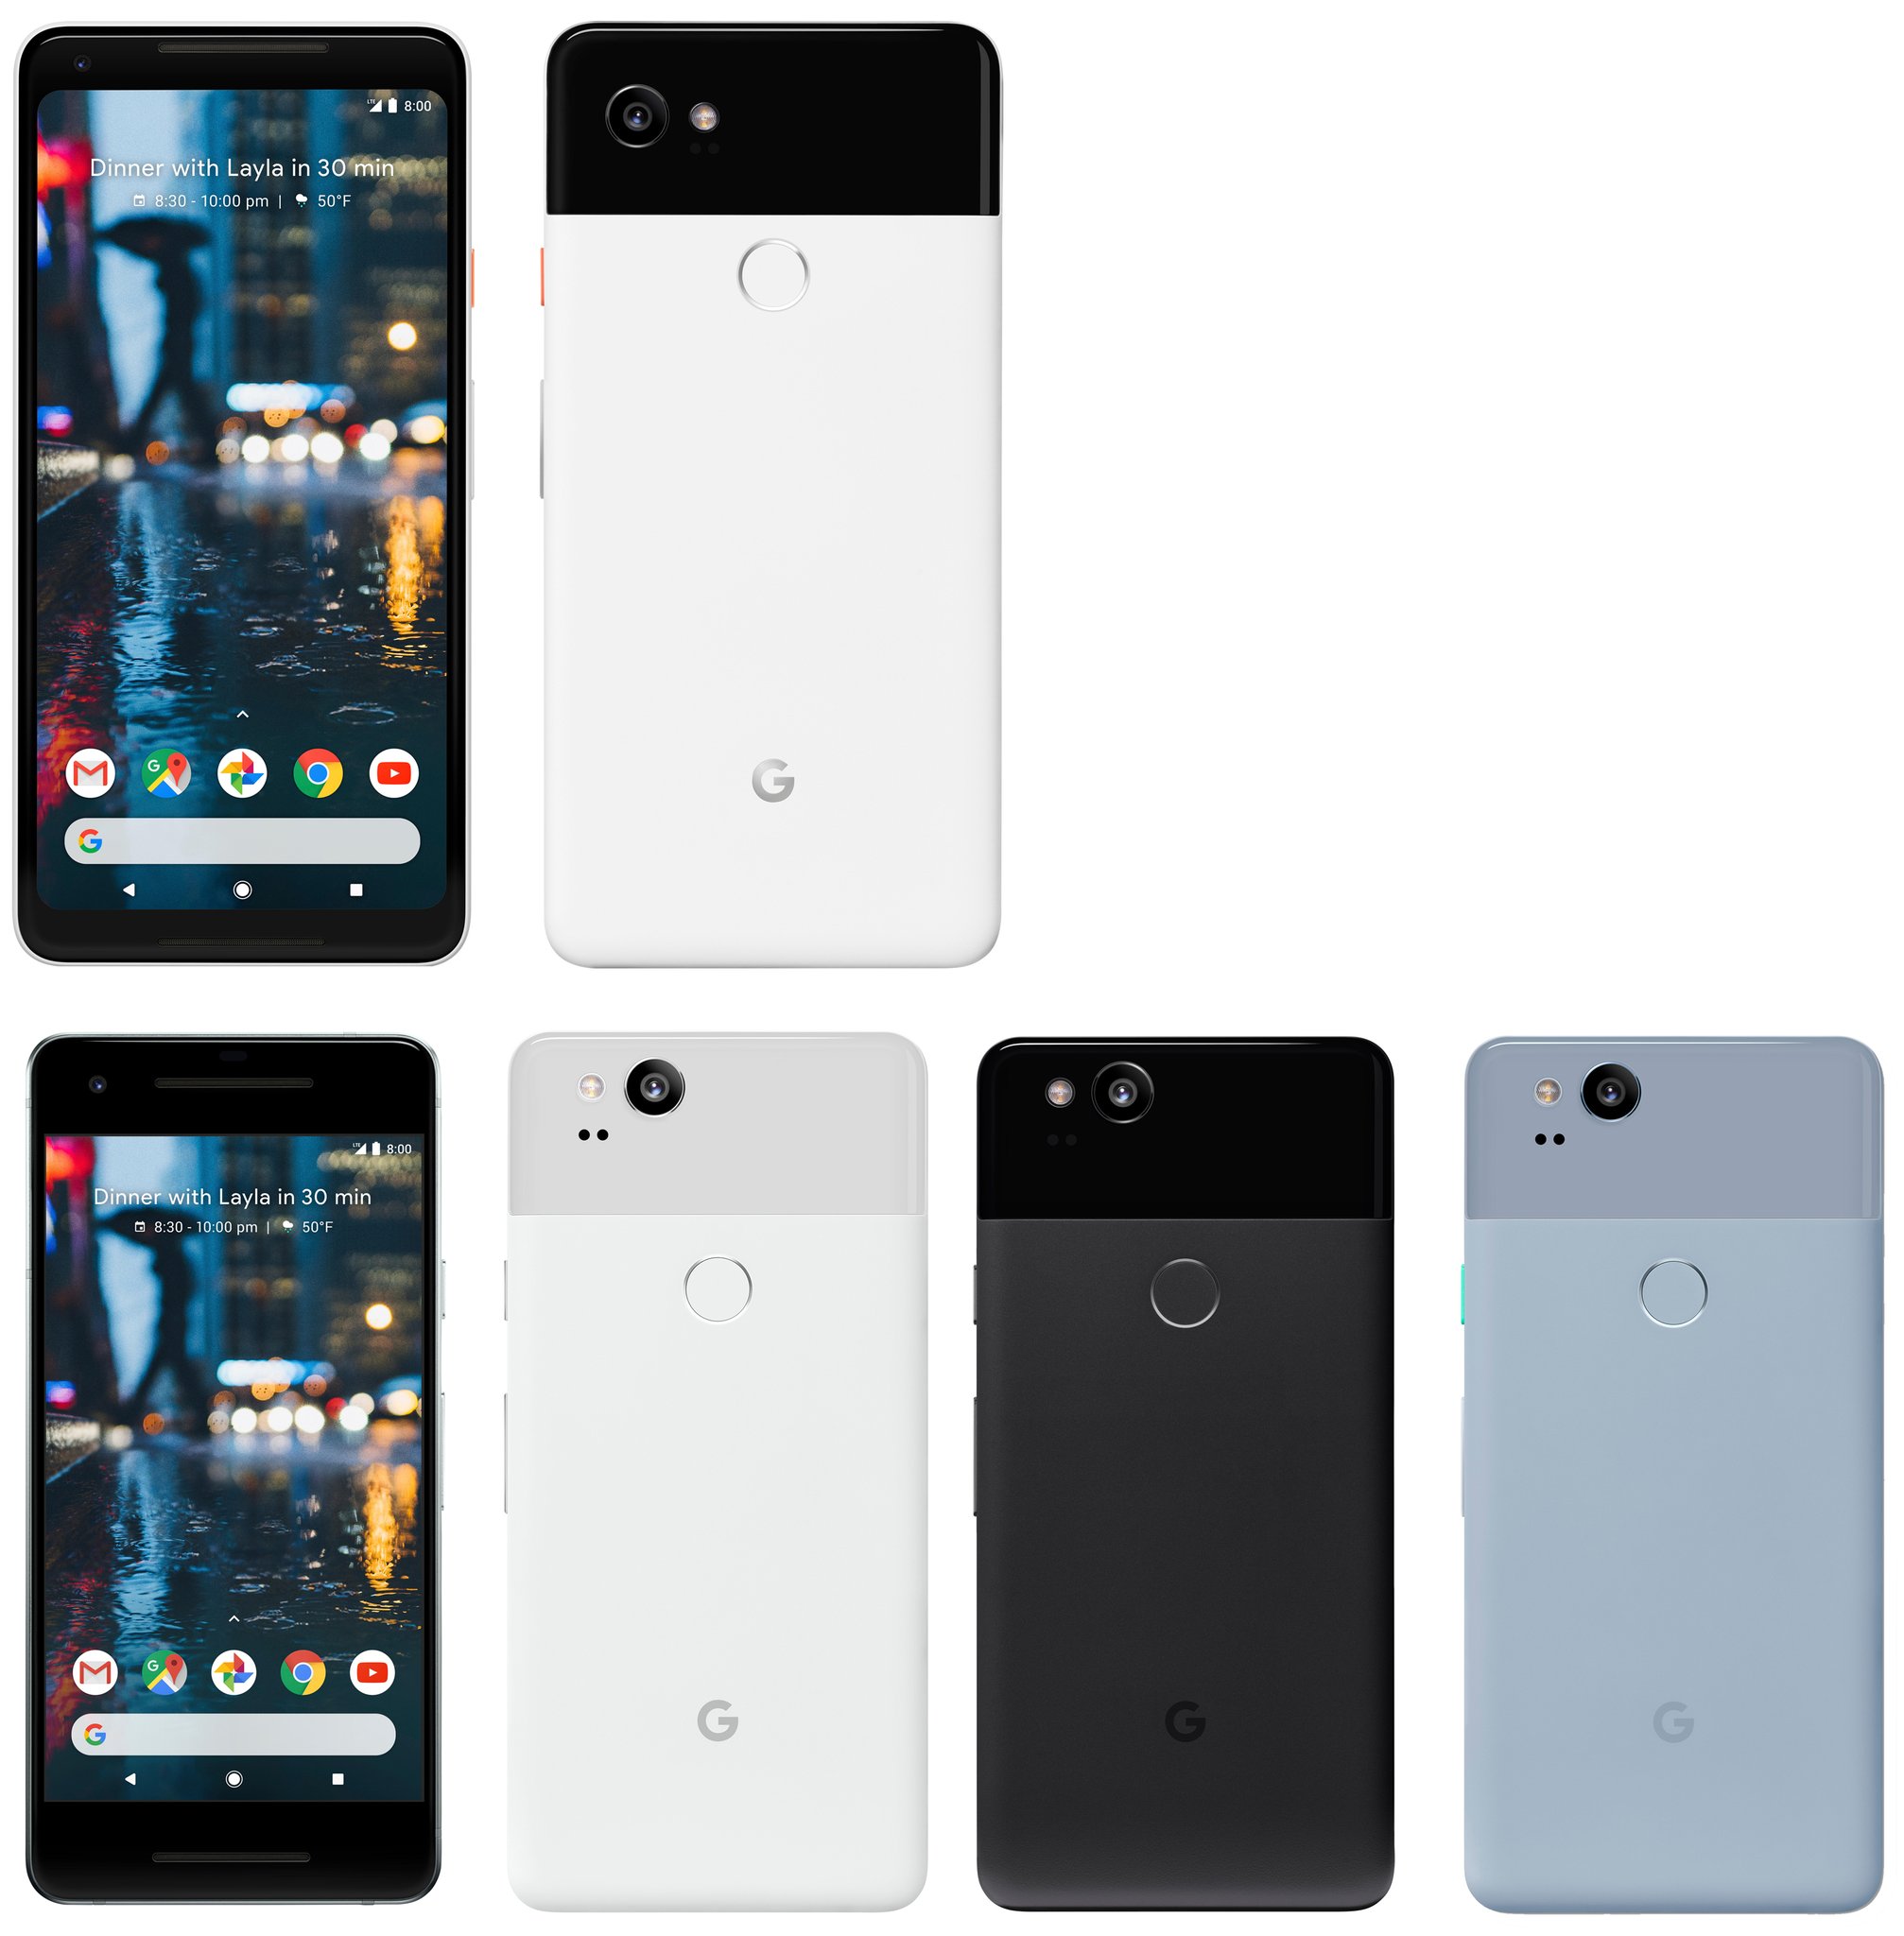 Immagine pubblicata in relazione al seguente contenuto: Una foto leaked rivela l'estetica degli smartphone Google Pixel 2 e Pixel 2 XL | Nome immagine: news27137_Google-Pixel-2-Pixel-2-XL_1.jpg